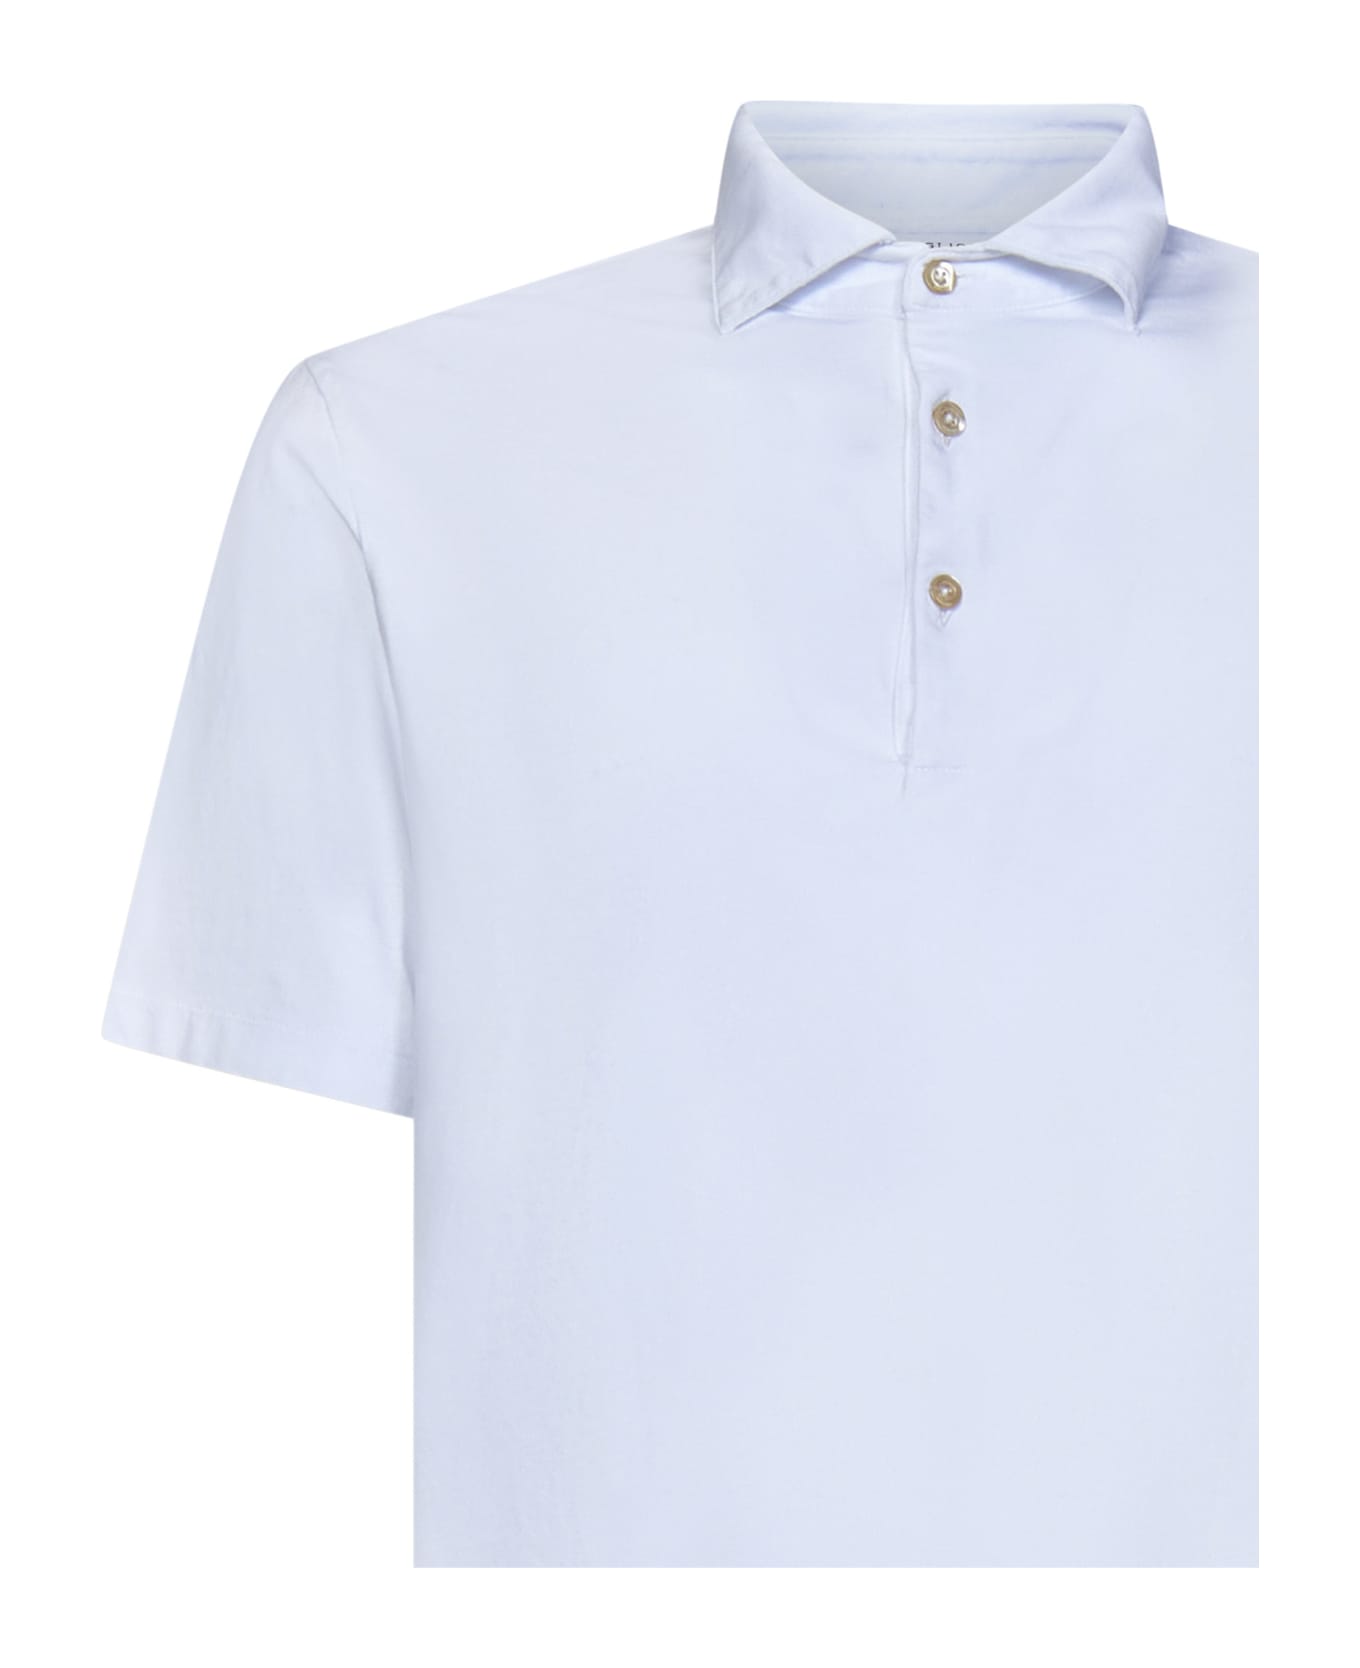 Boglioli Shirt - White